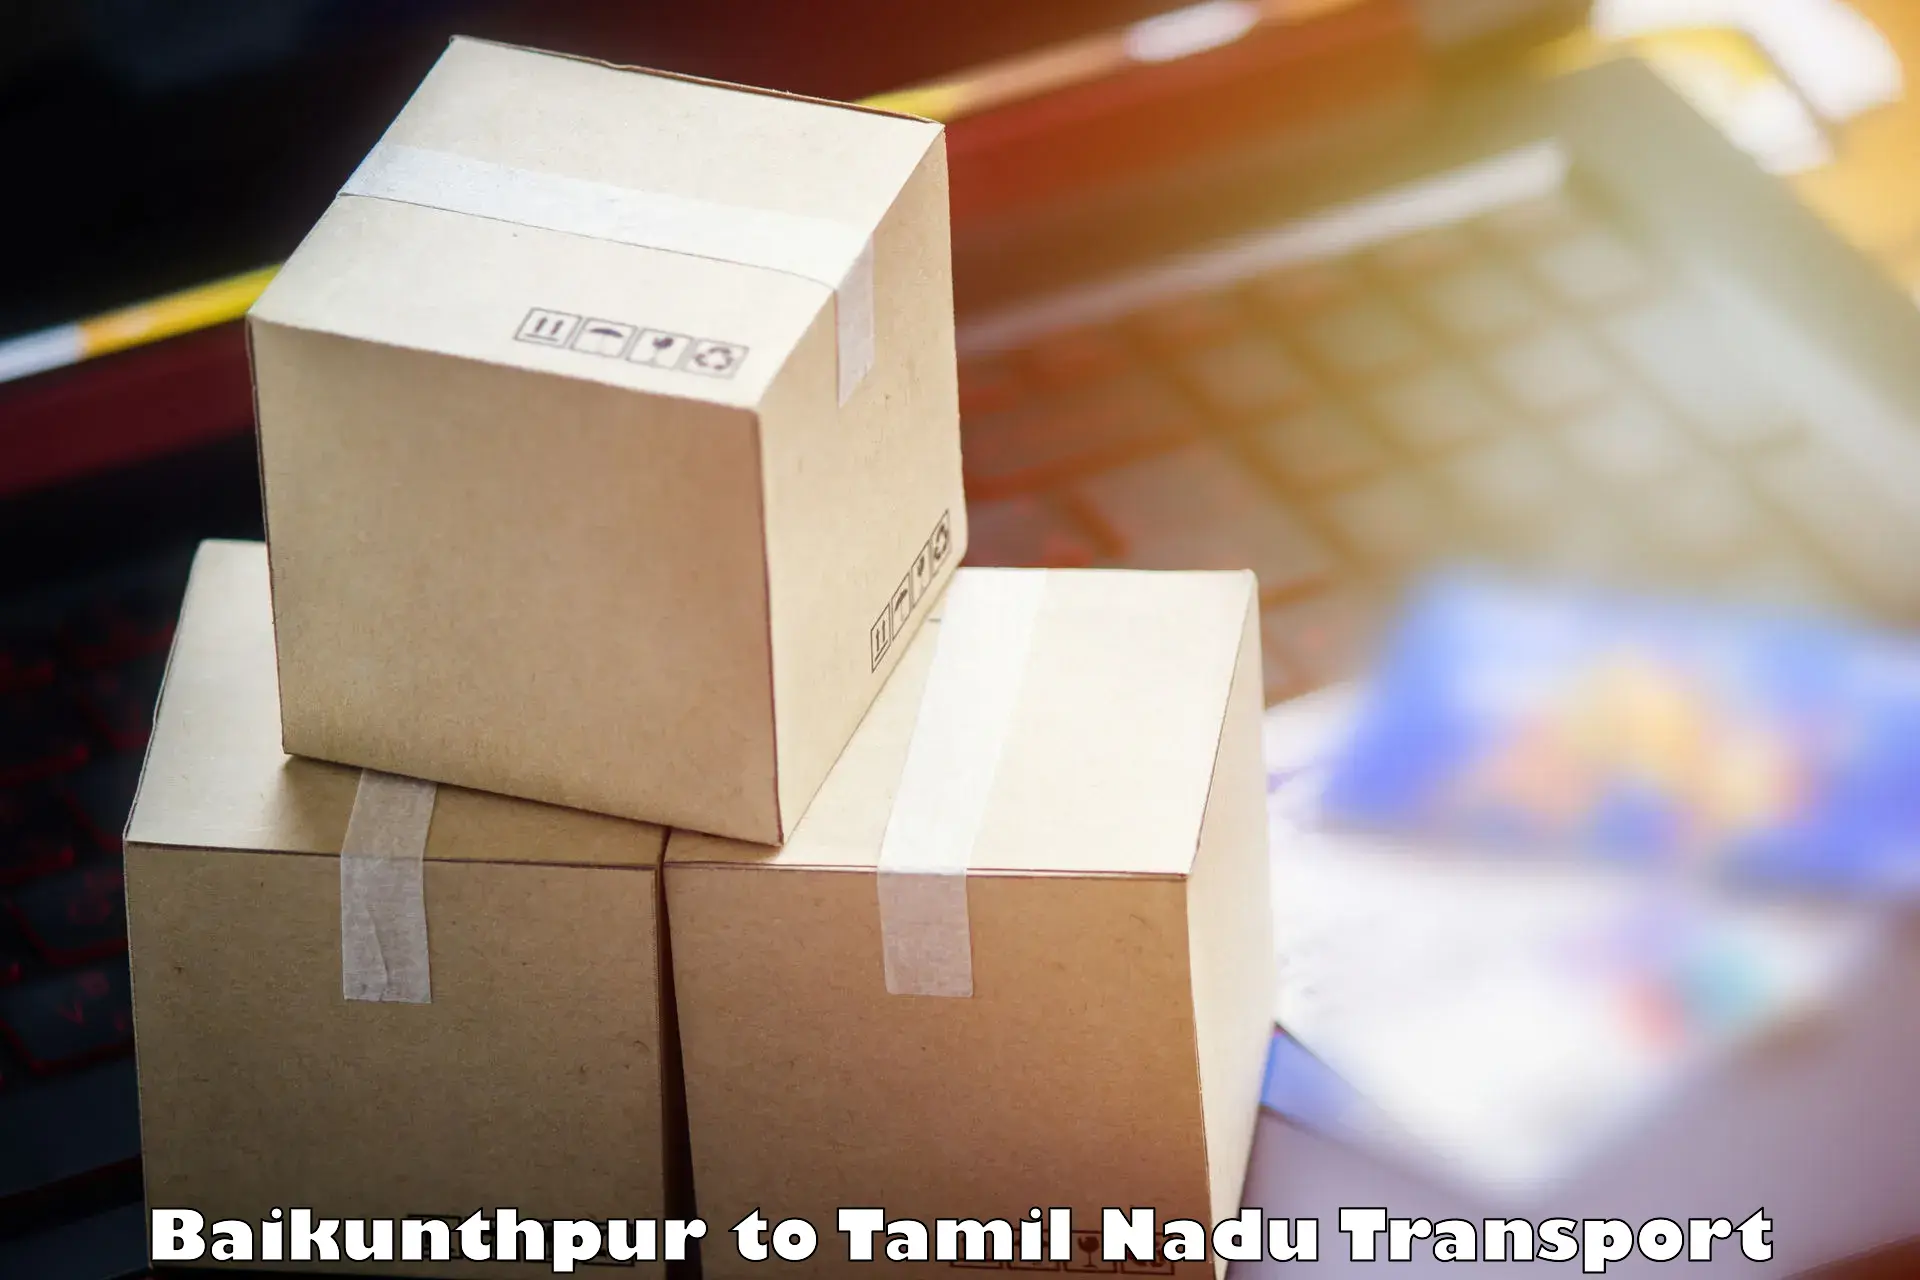 Shipping partner Baikunthpur to Mannargudi